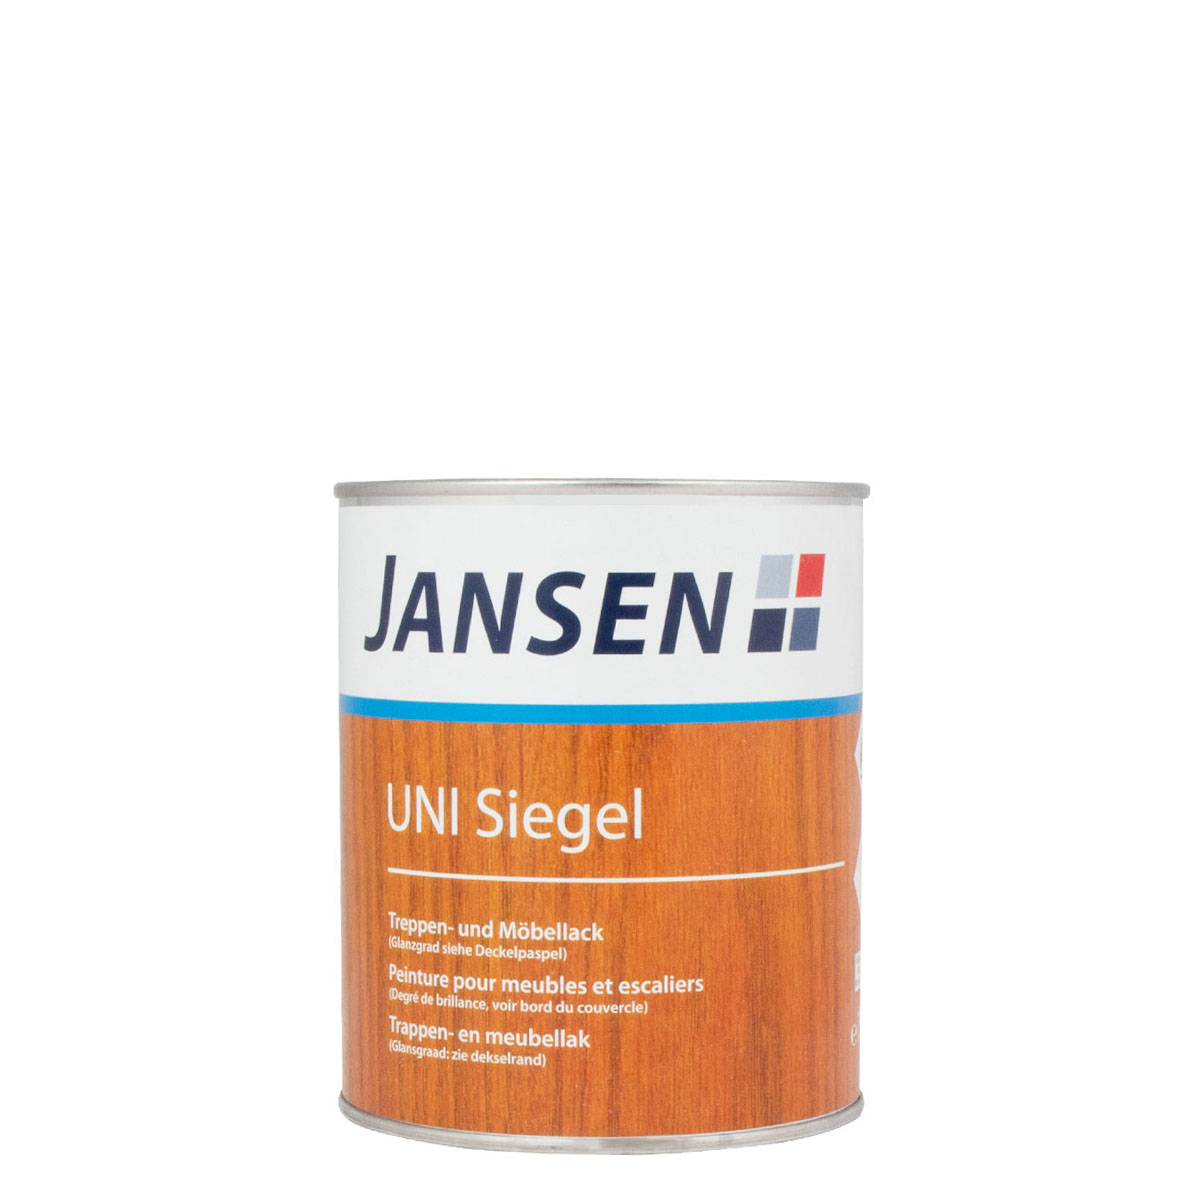 Jansen_Uni-Siegel_tapeten_moebellack_750ml_gross